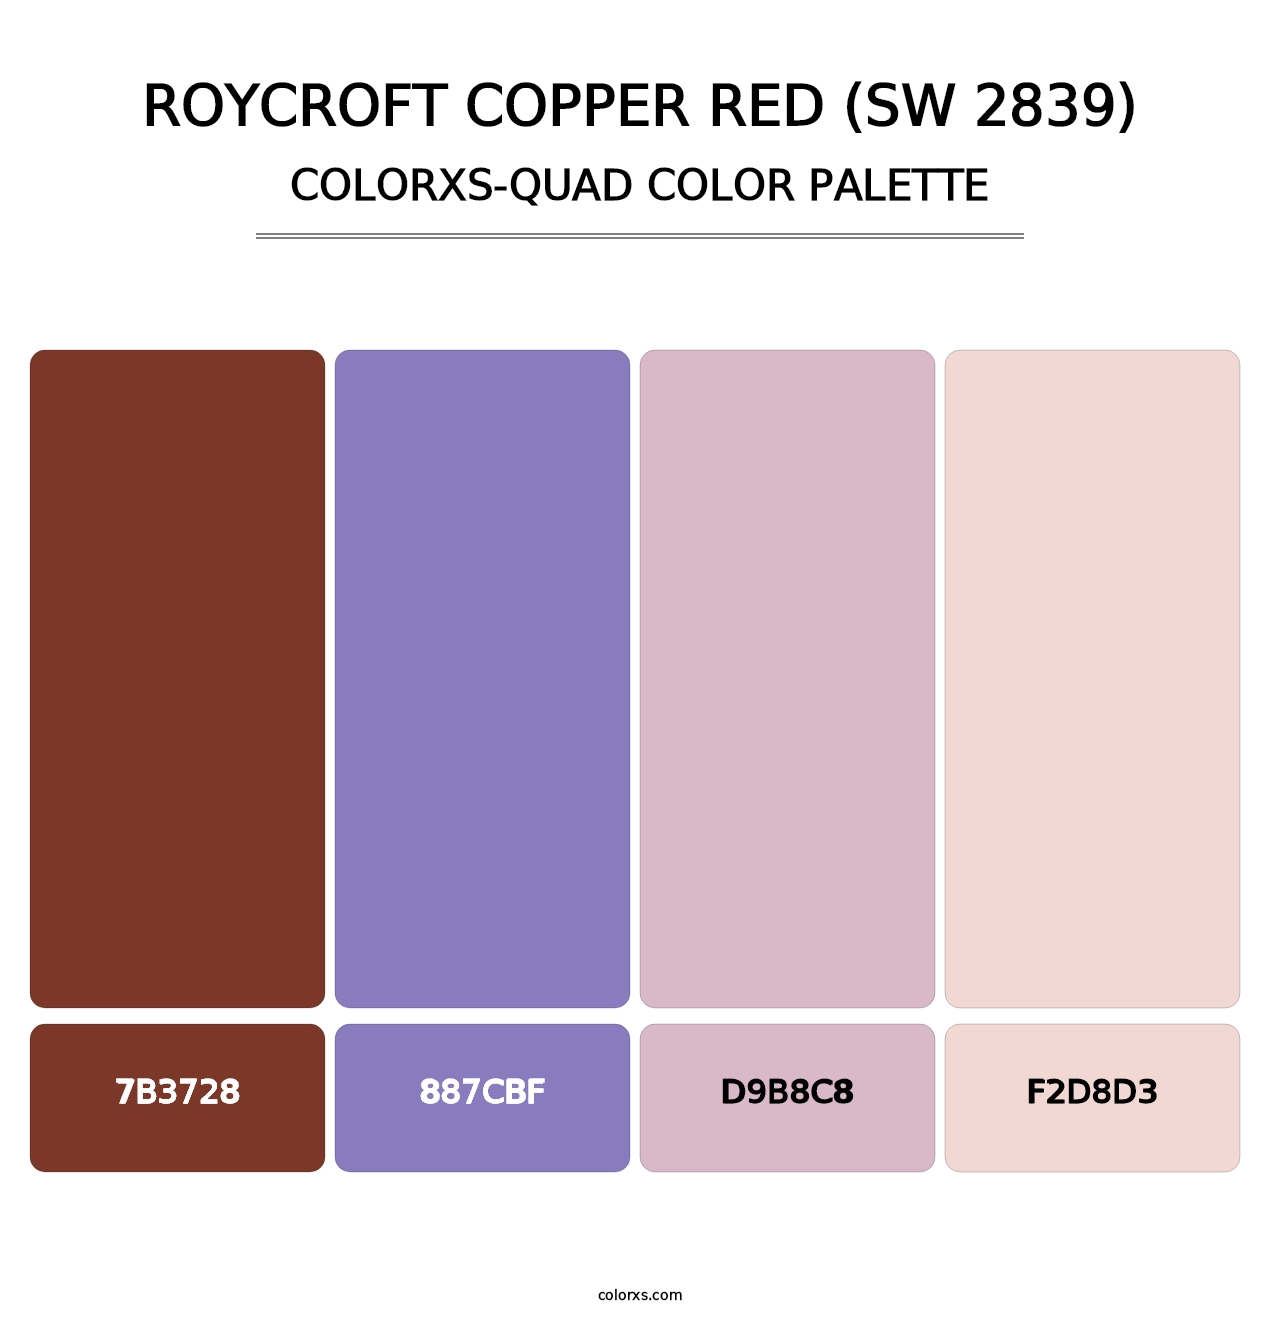 Roycroft Copper Red (SW 2839) - Colorxs Quad Palette